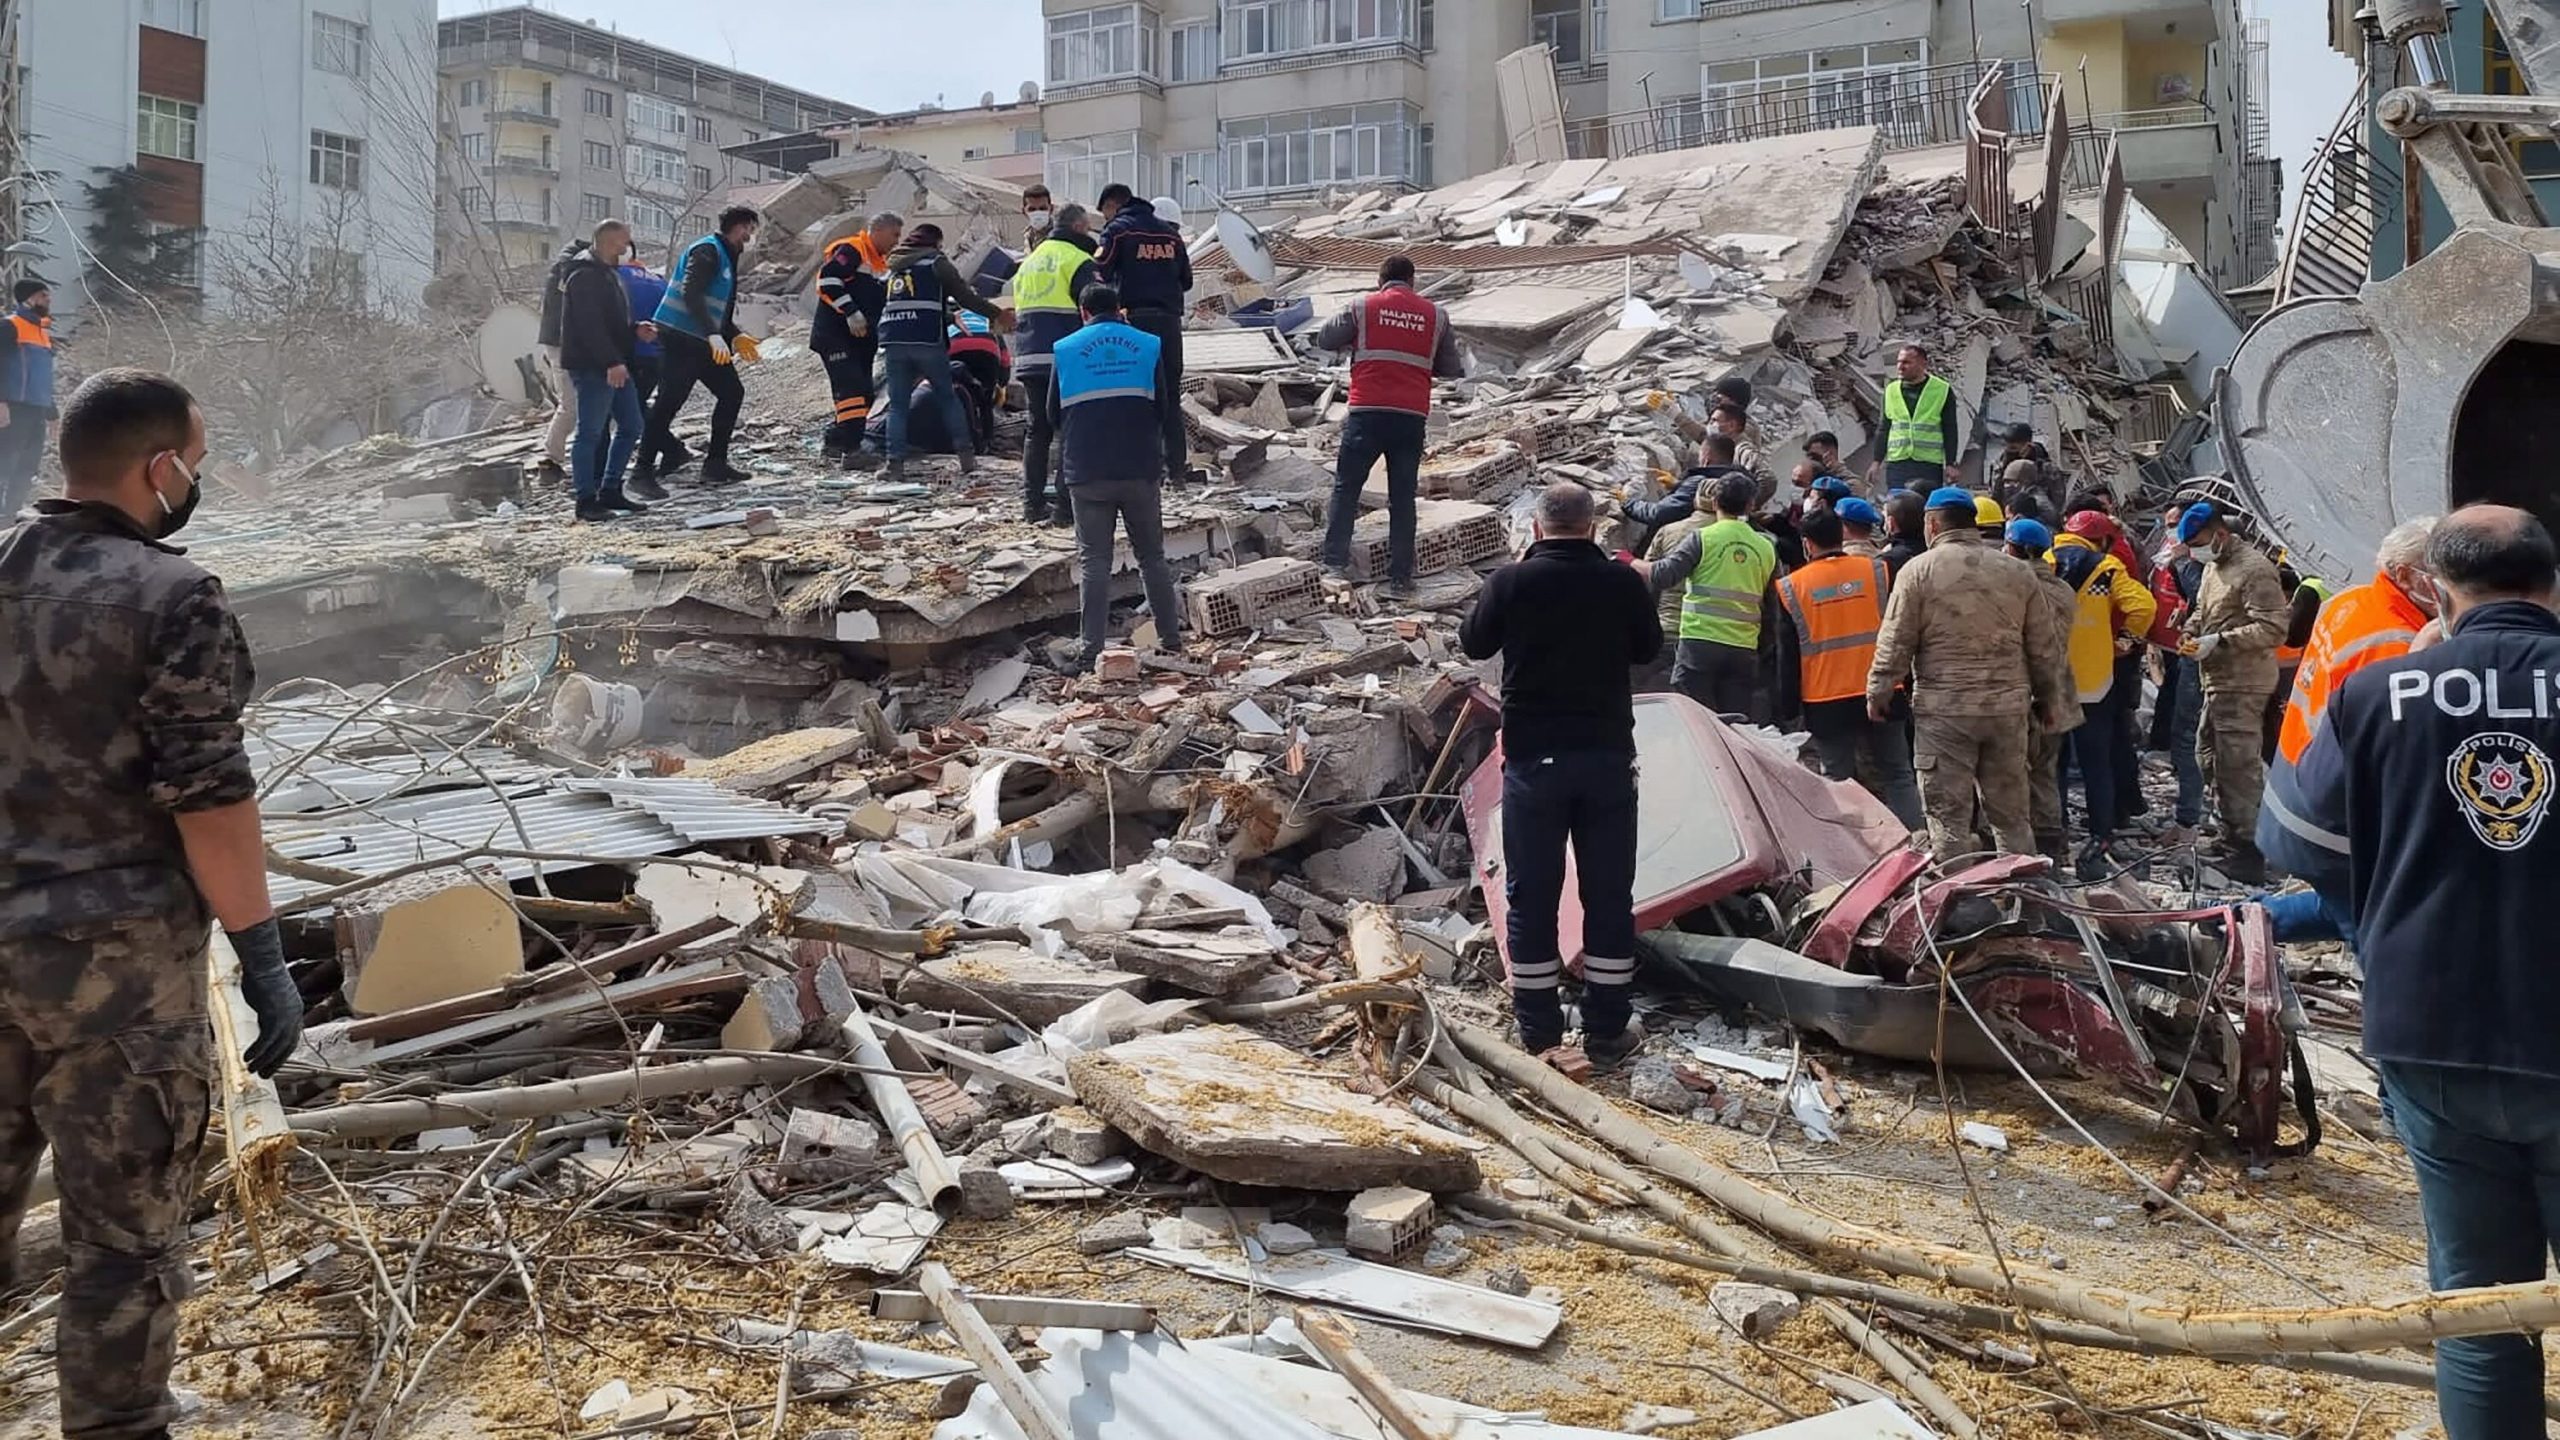 Provincia Malatya a fost deja afectată de cutremurul devastator de la 6 februarie, care a ucis 44.374 de persoane în sudul şi sud-estul Turciei, conform celui mai recent bilanţ oficial